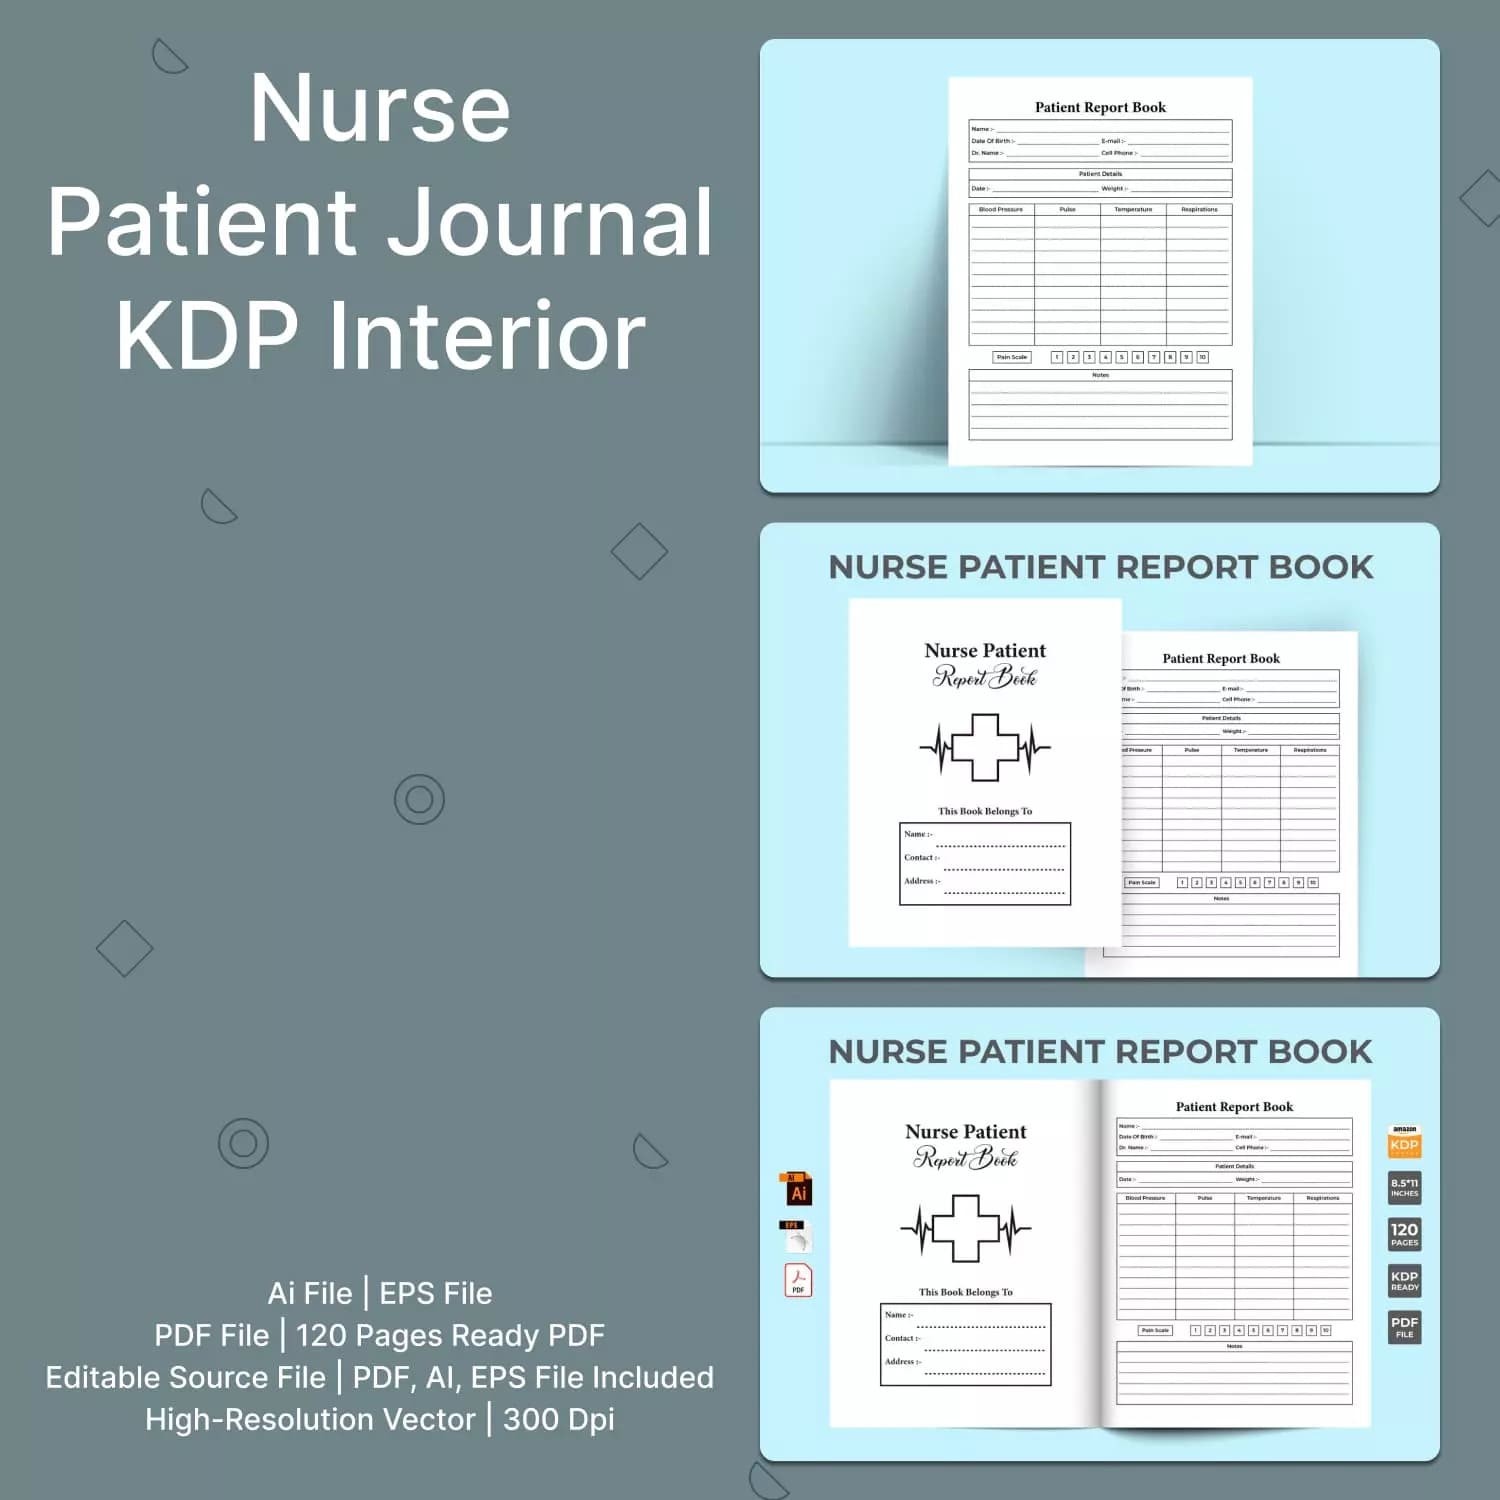 Nurse Patient Journal Kdp Interior Preview image.